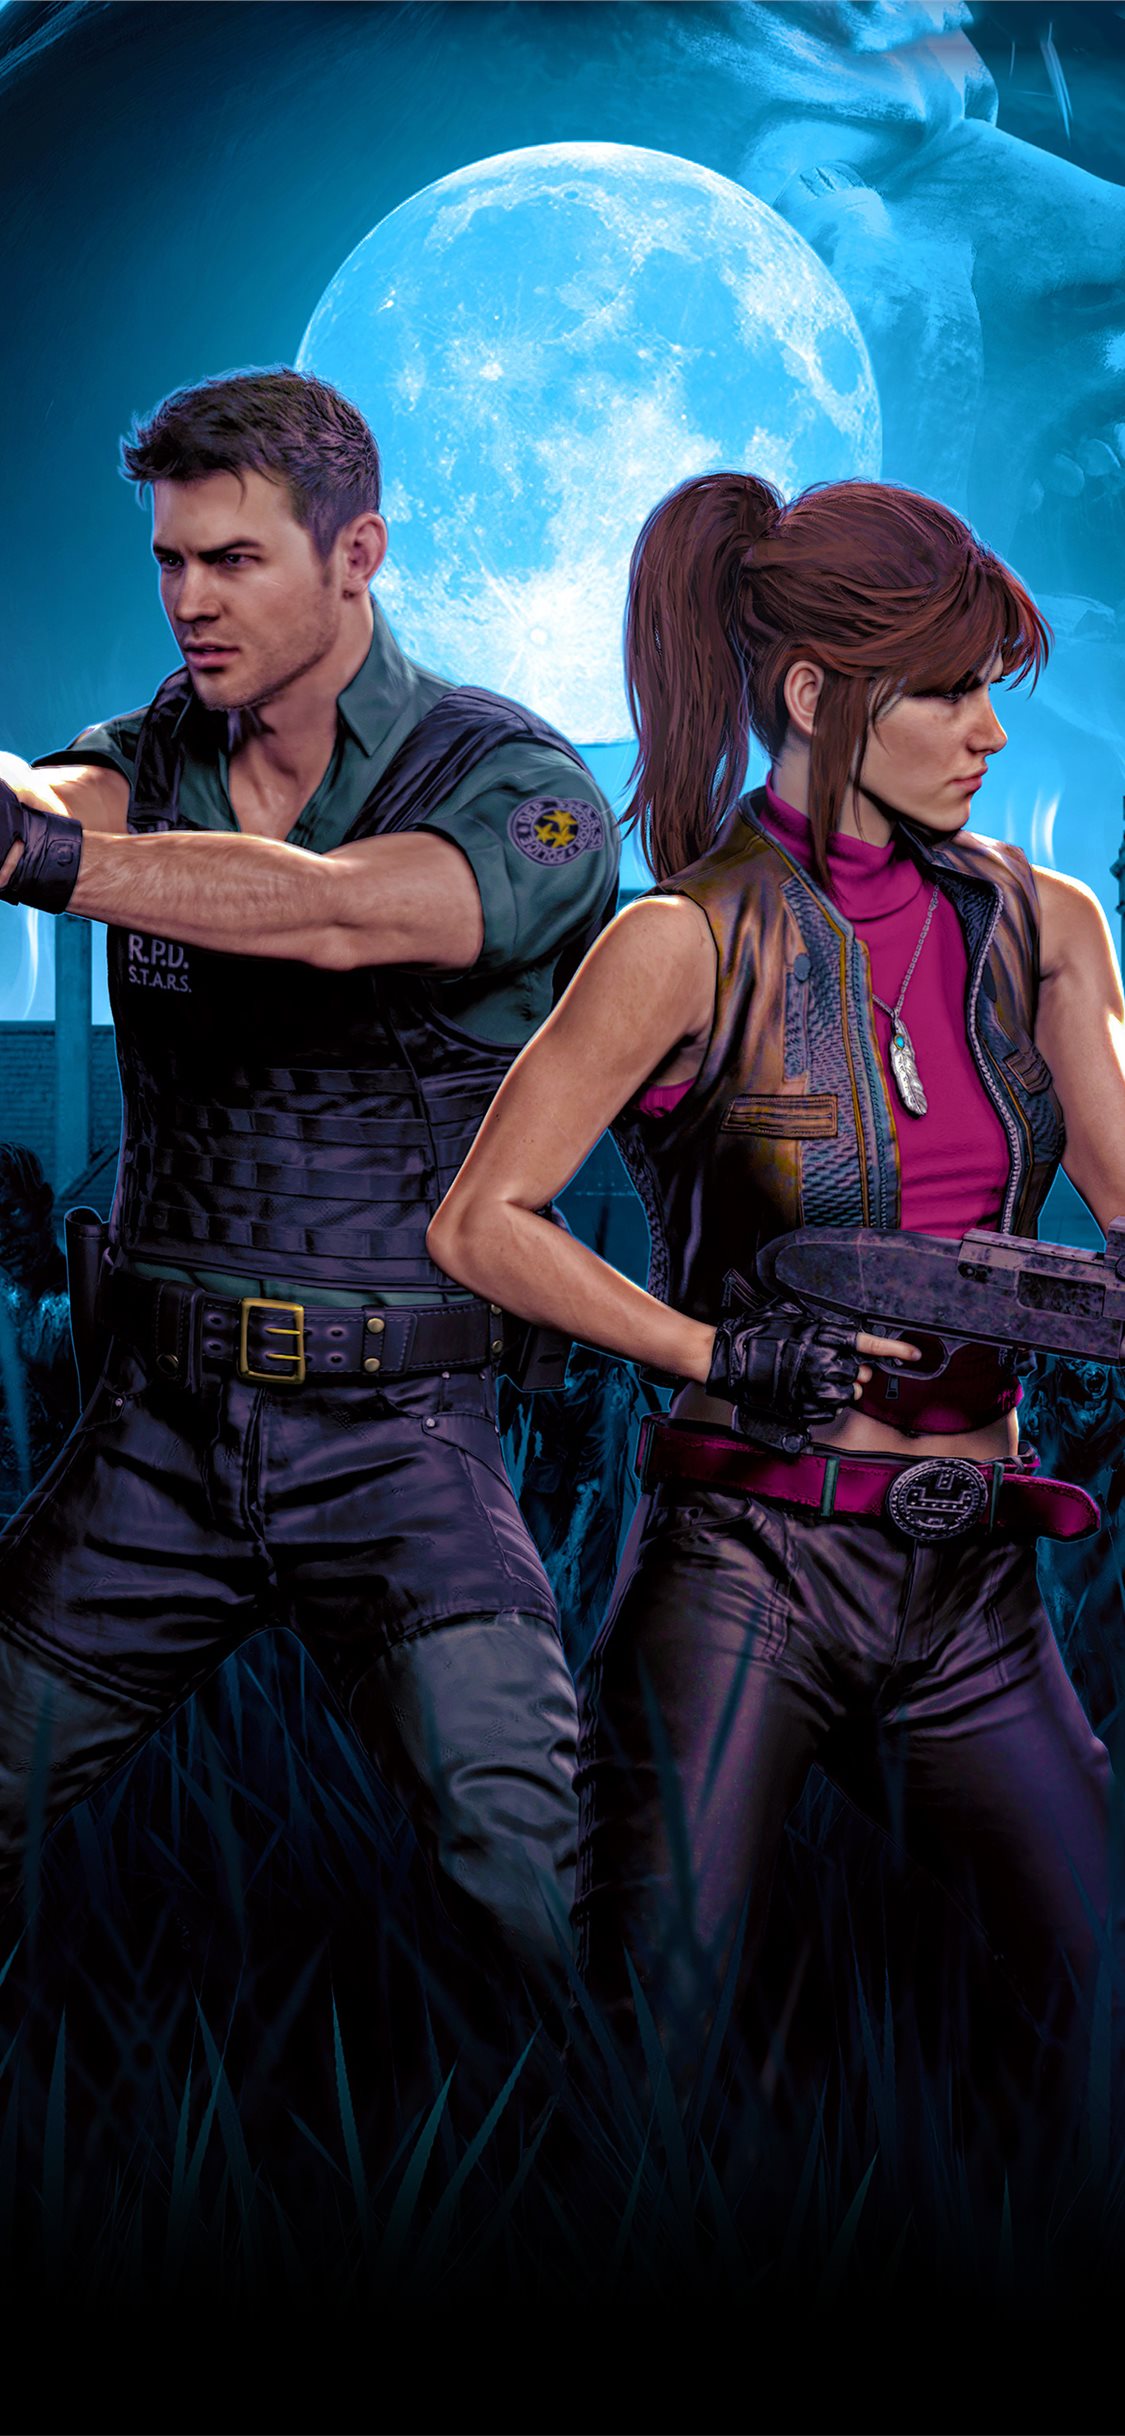 Resident Evil 3 Wallpapaer , HD Wallpaper & Backgrounds